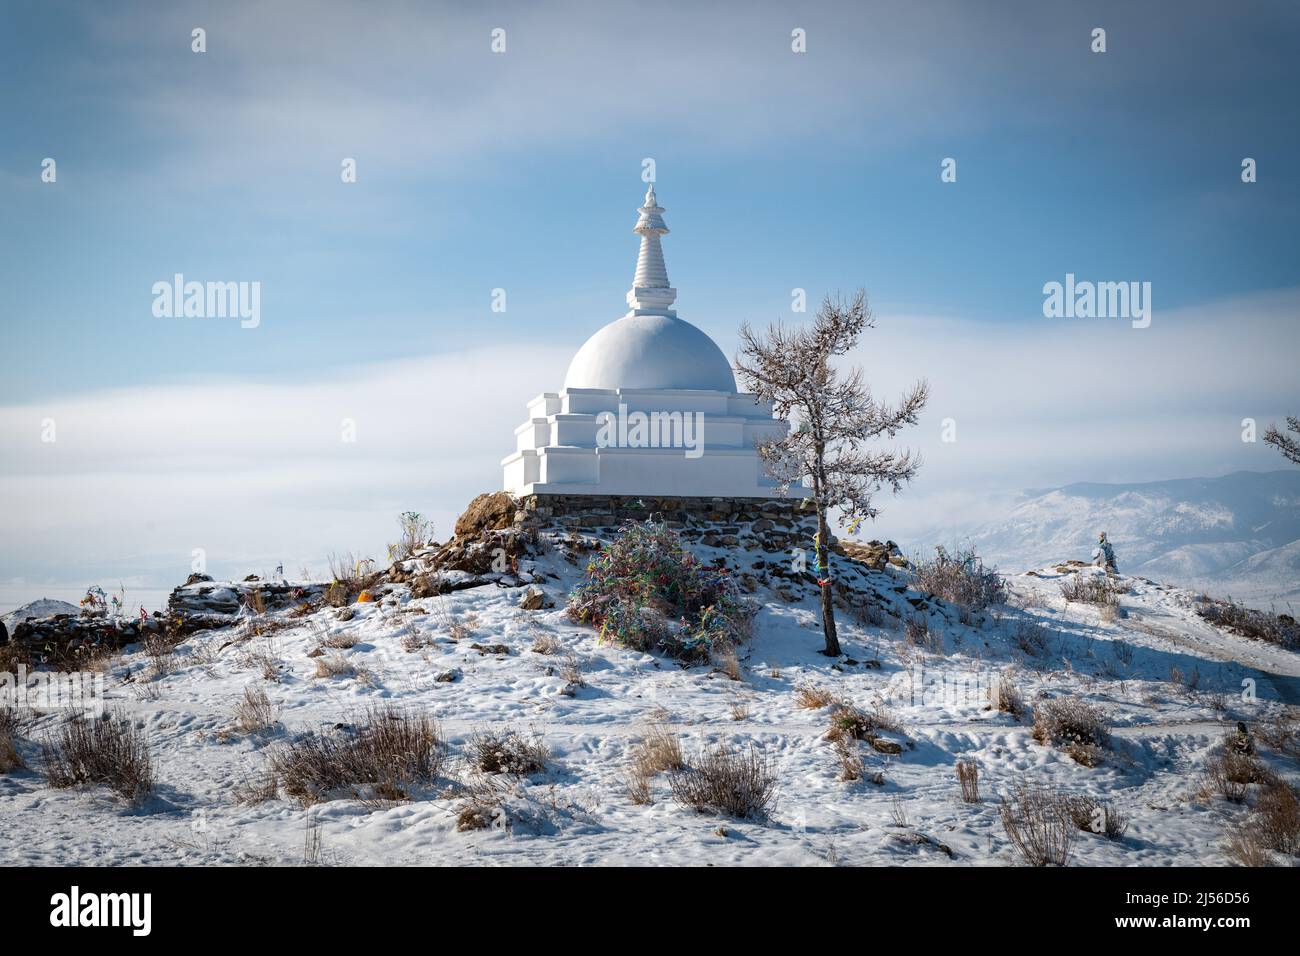 Isola di Ogoy, Lago Baikal, Russia - stupa buddista bianco e il lago baikal Foto Stock